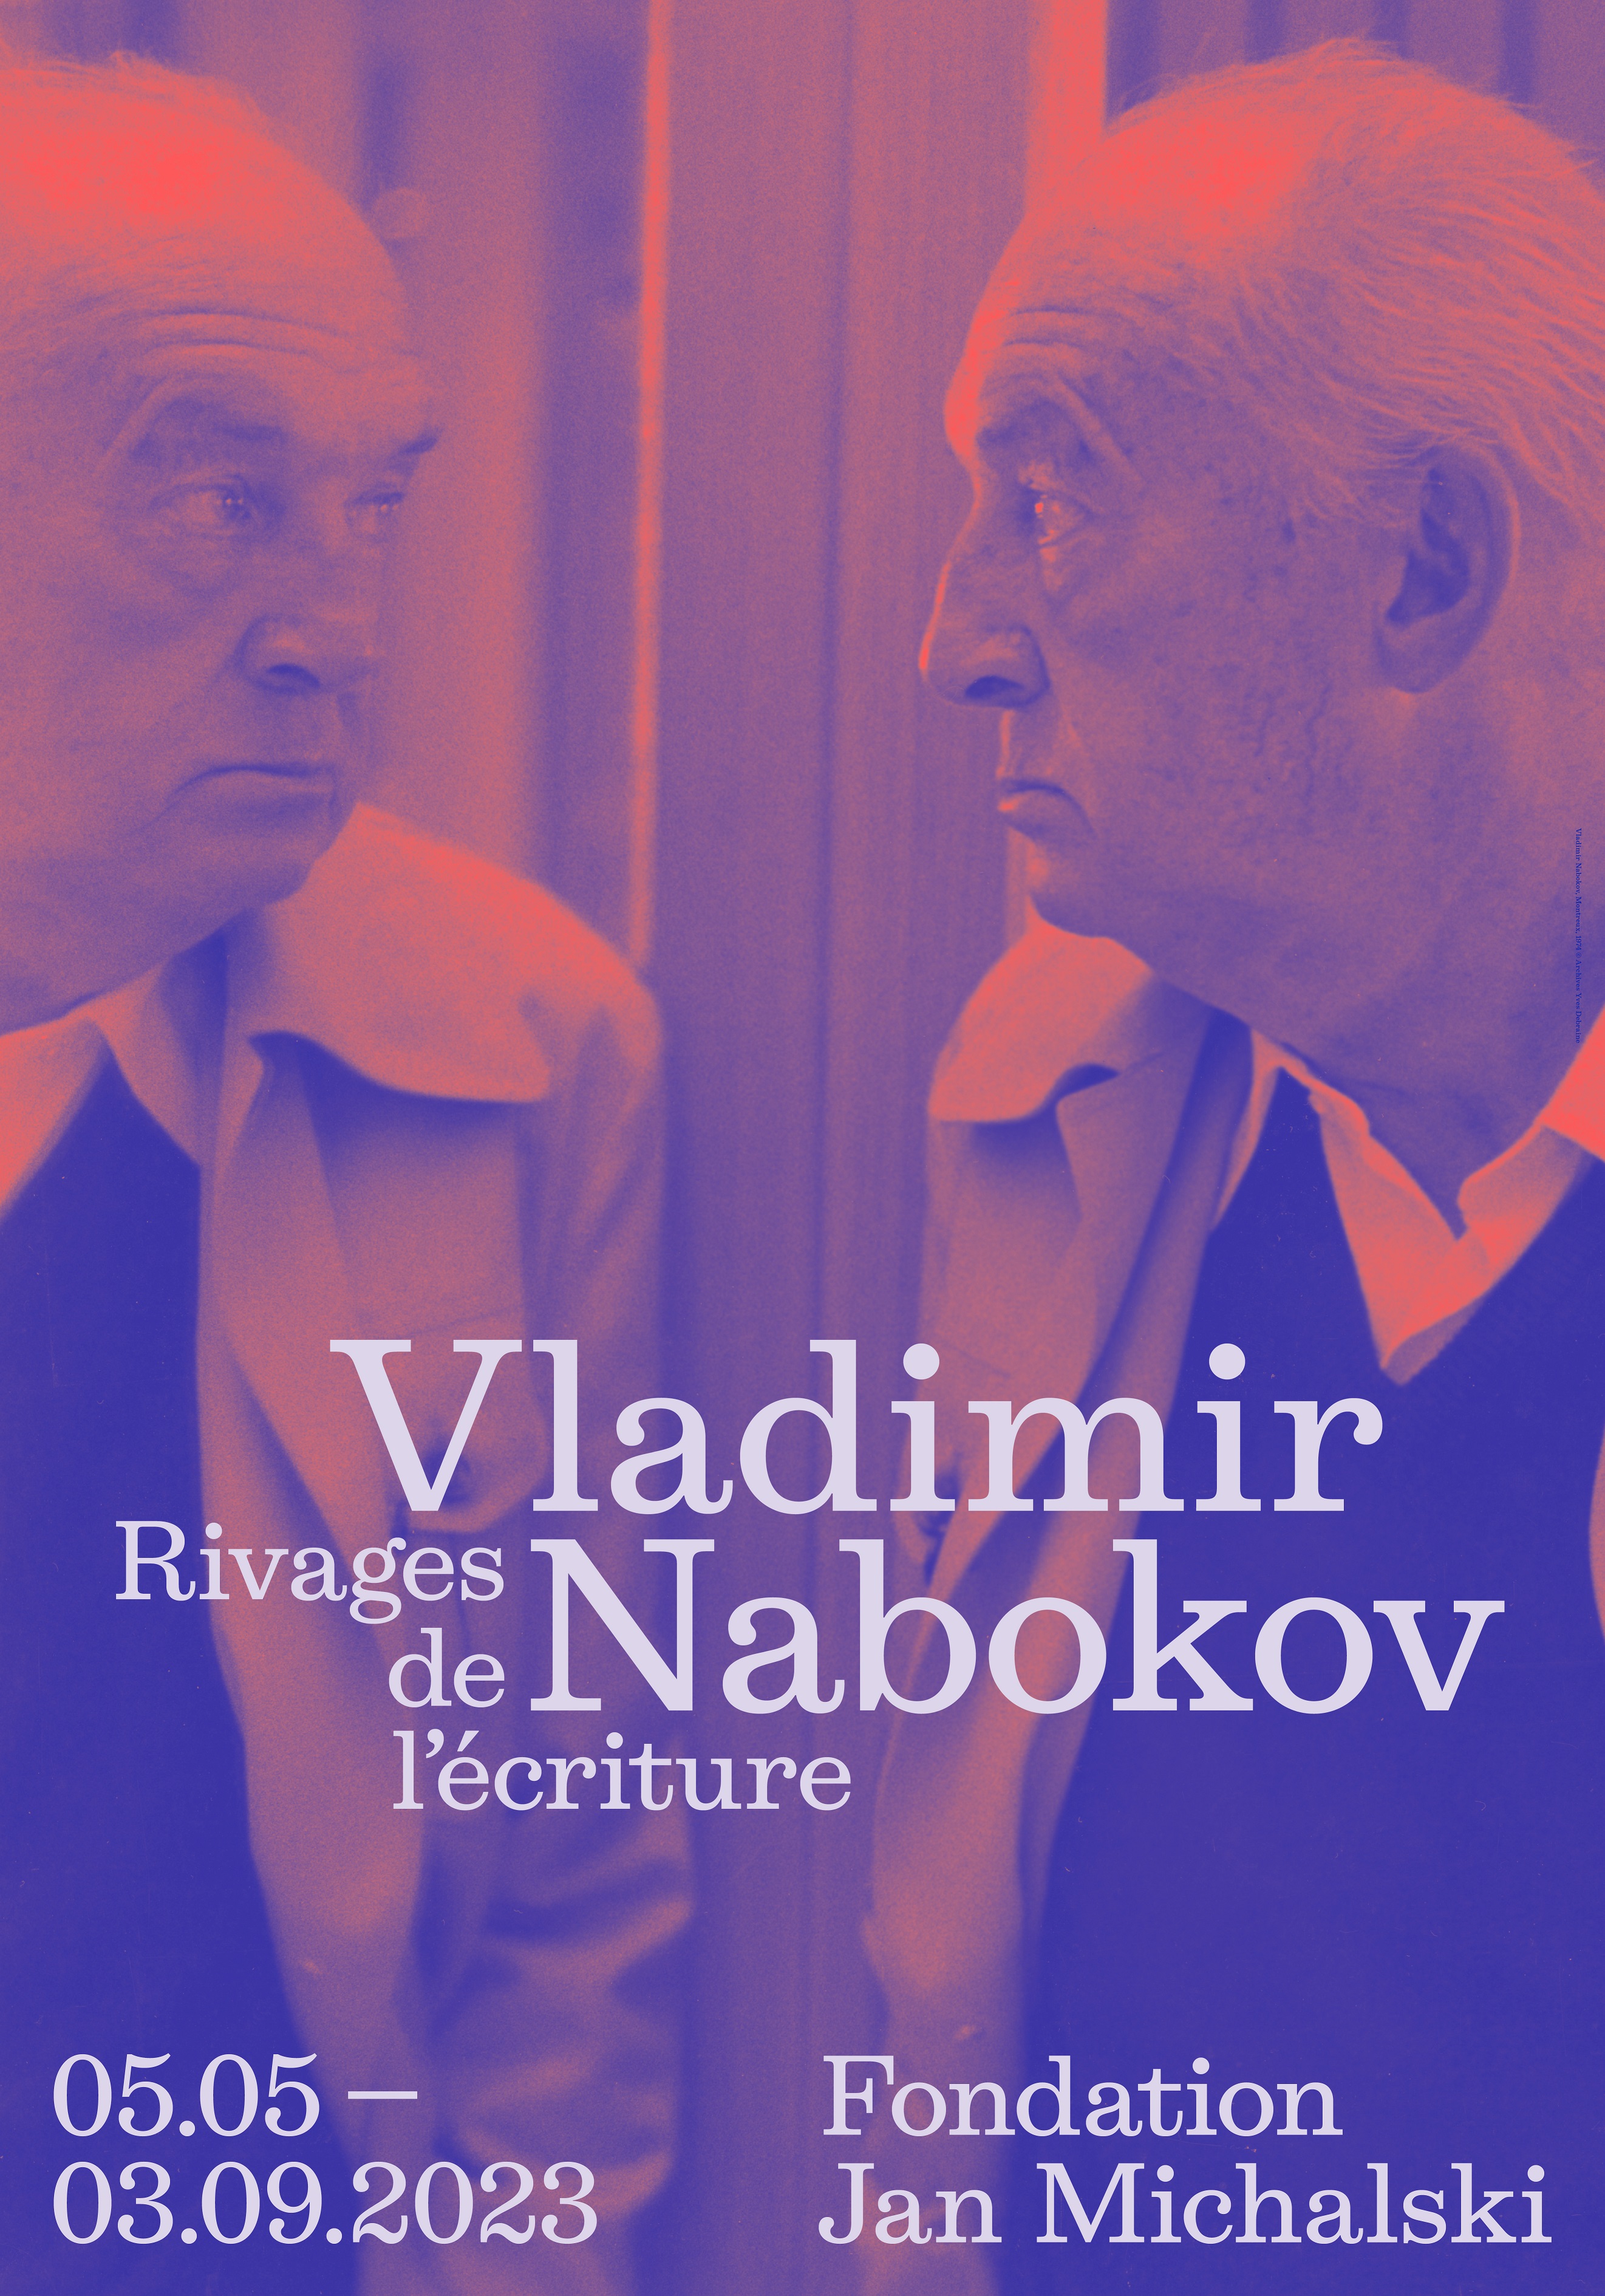 Exhibition Vladimir Nabokov